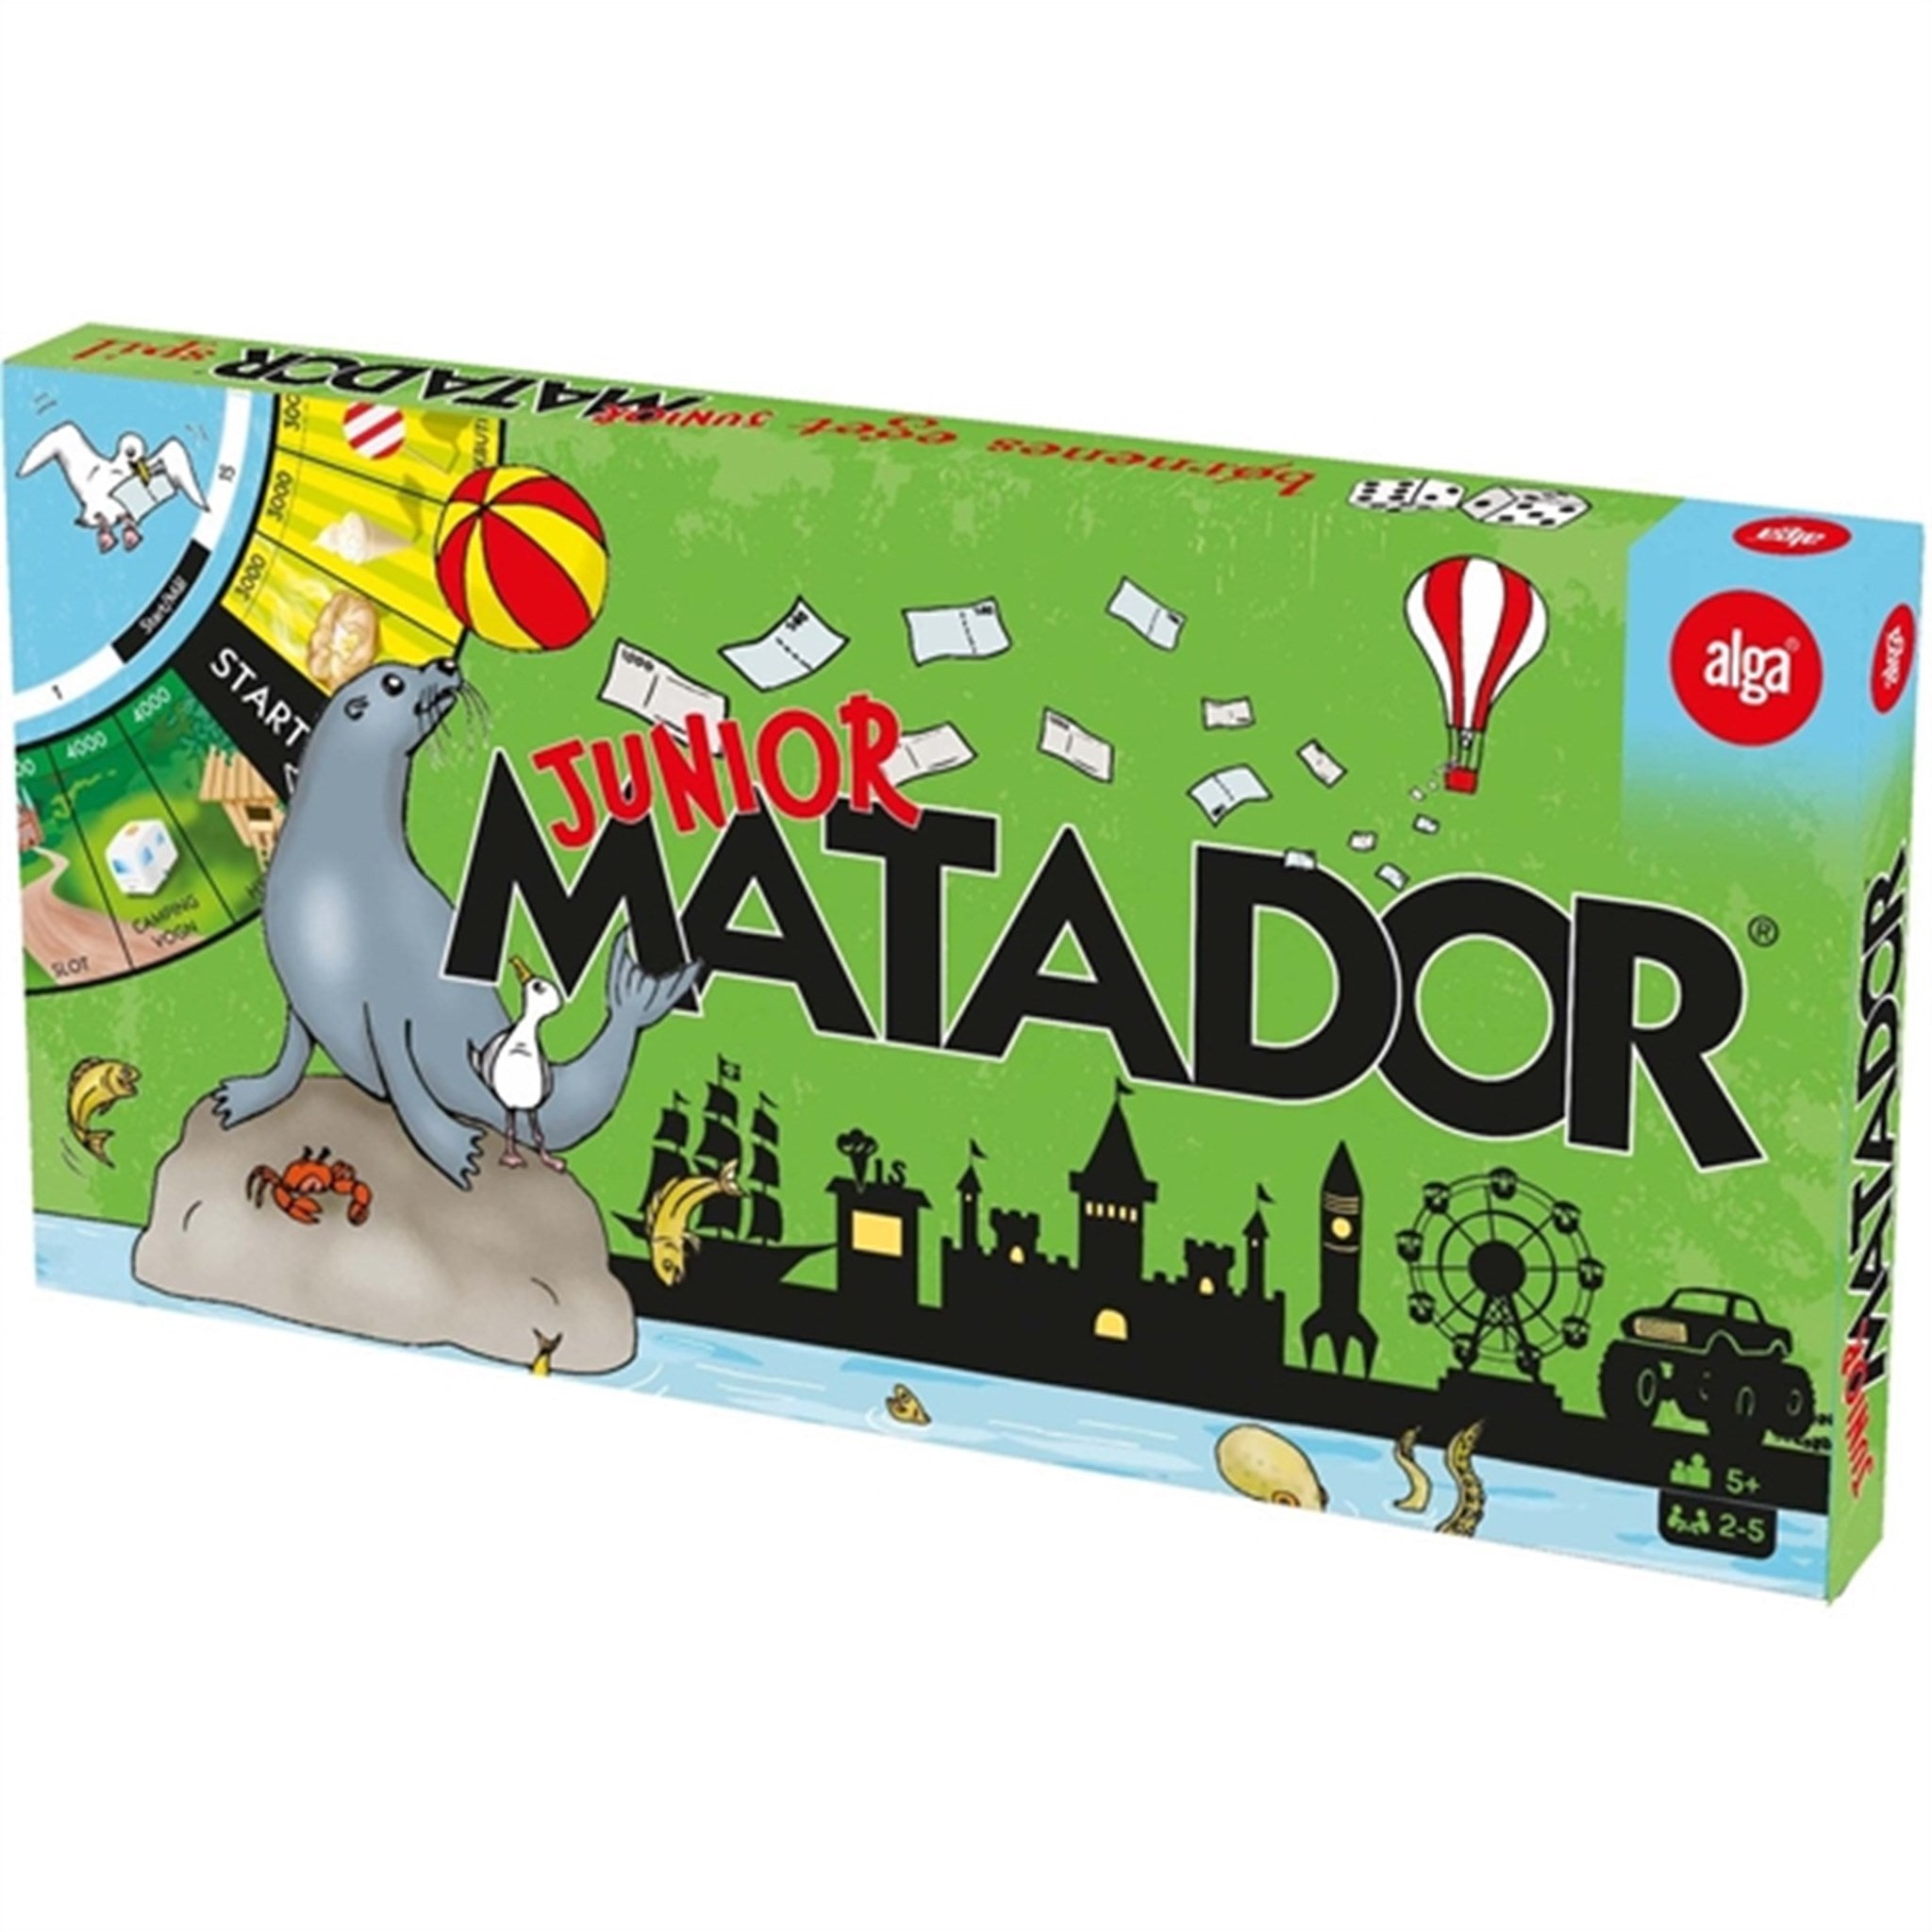 Alga Junior Matador Brætspil